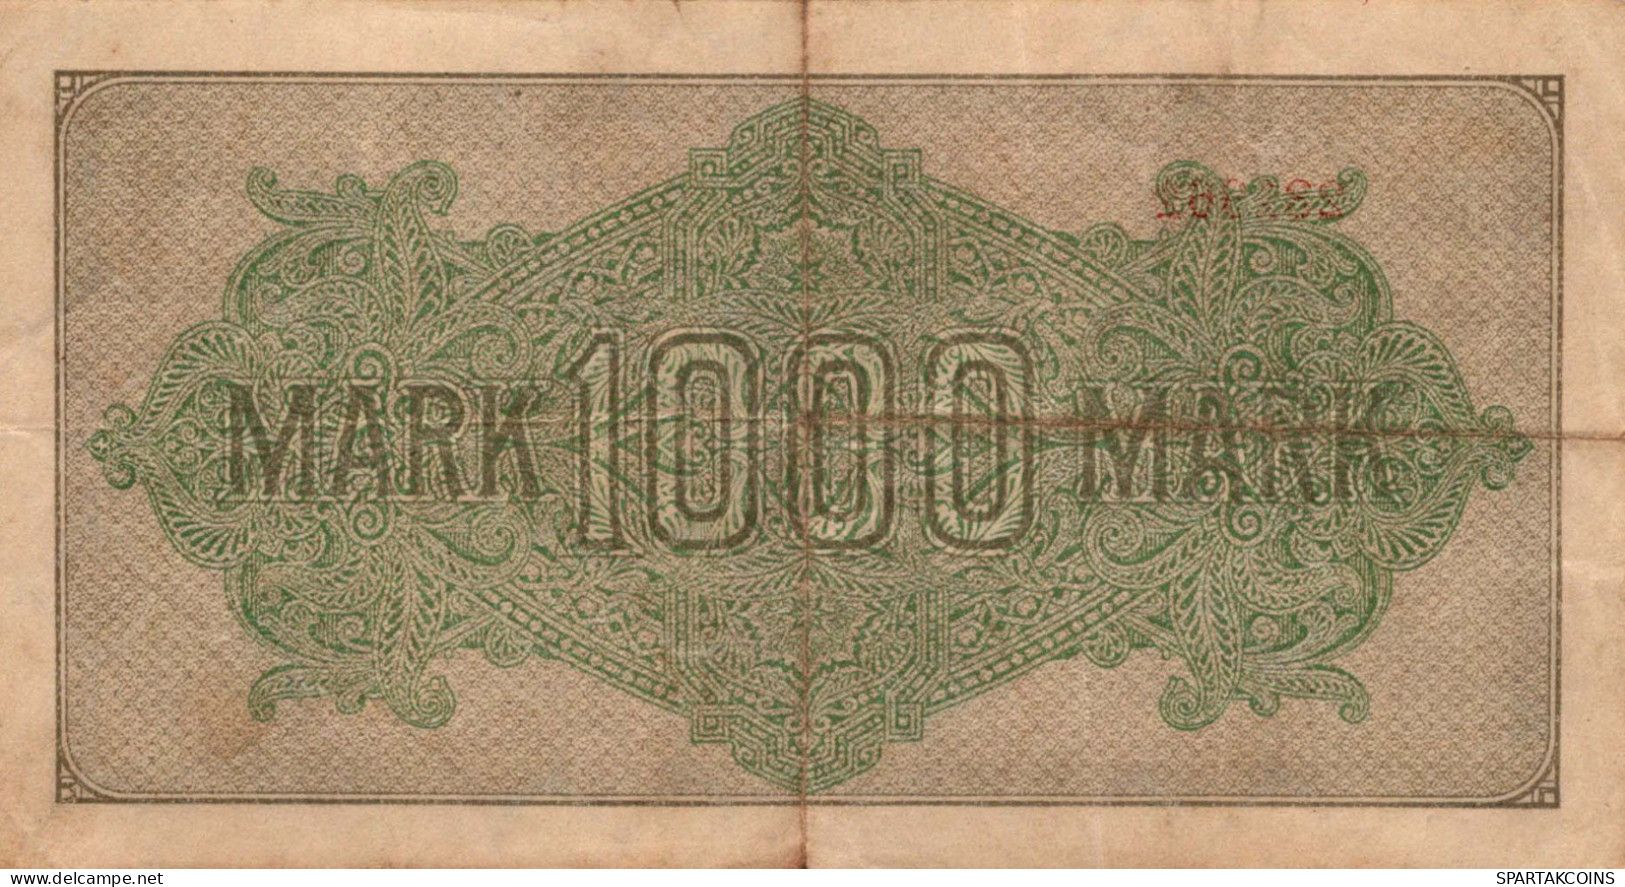 1000 MARK 1922 Stadt BERLIN DEUTSCHLAND Papiergeld Banknote #PL449 - [11] Emisiones Locales